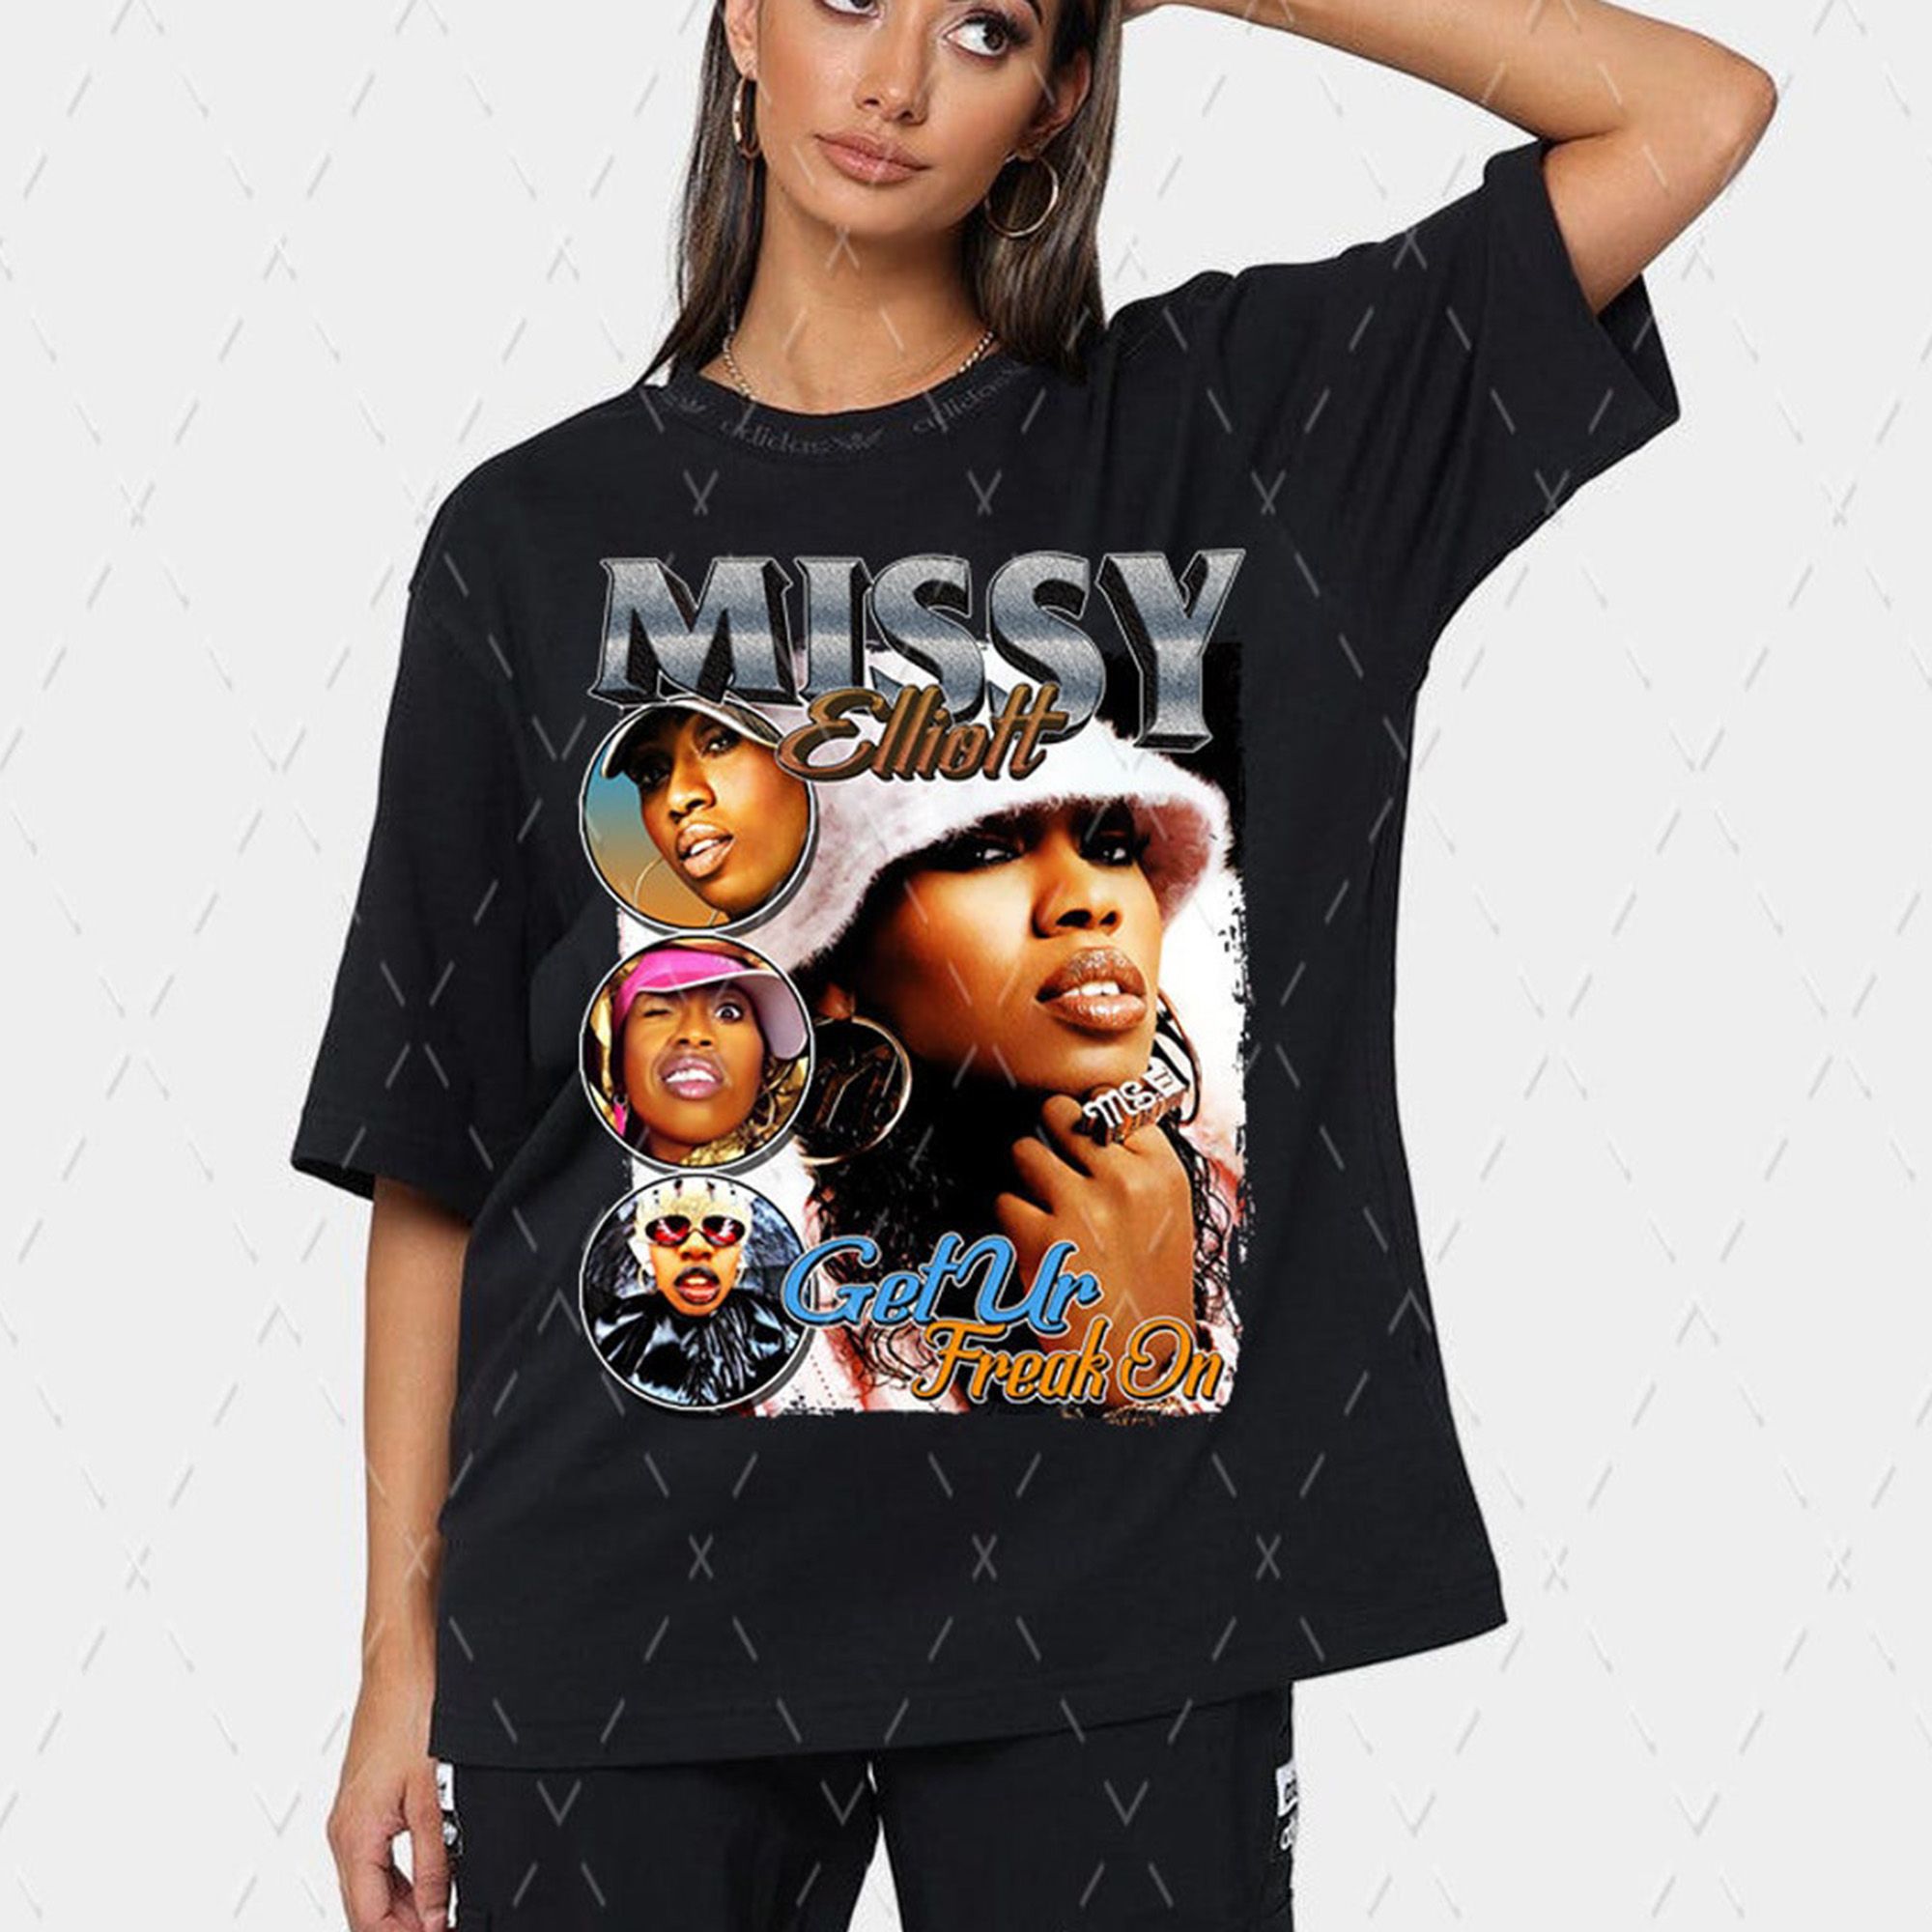 Missy Elliott shirt